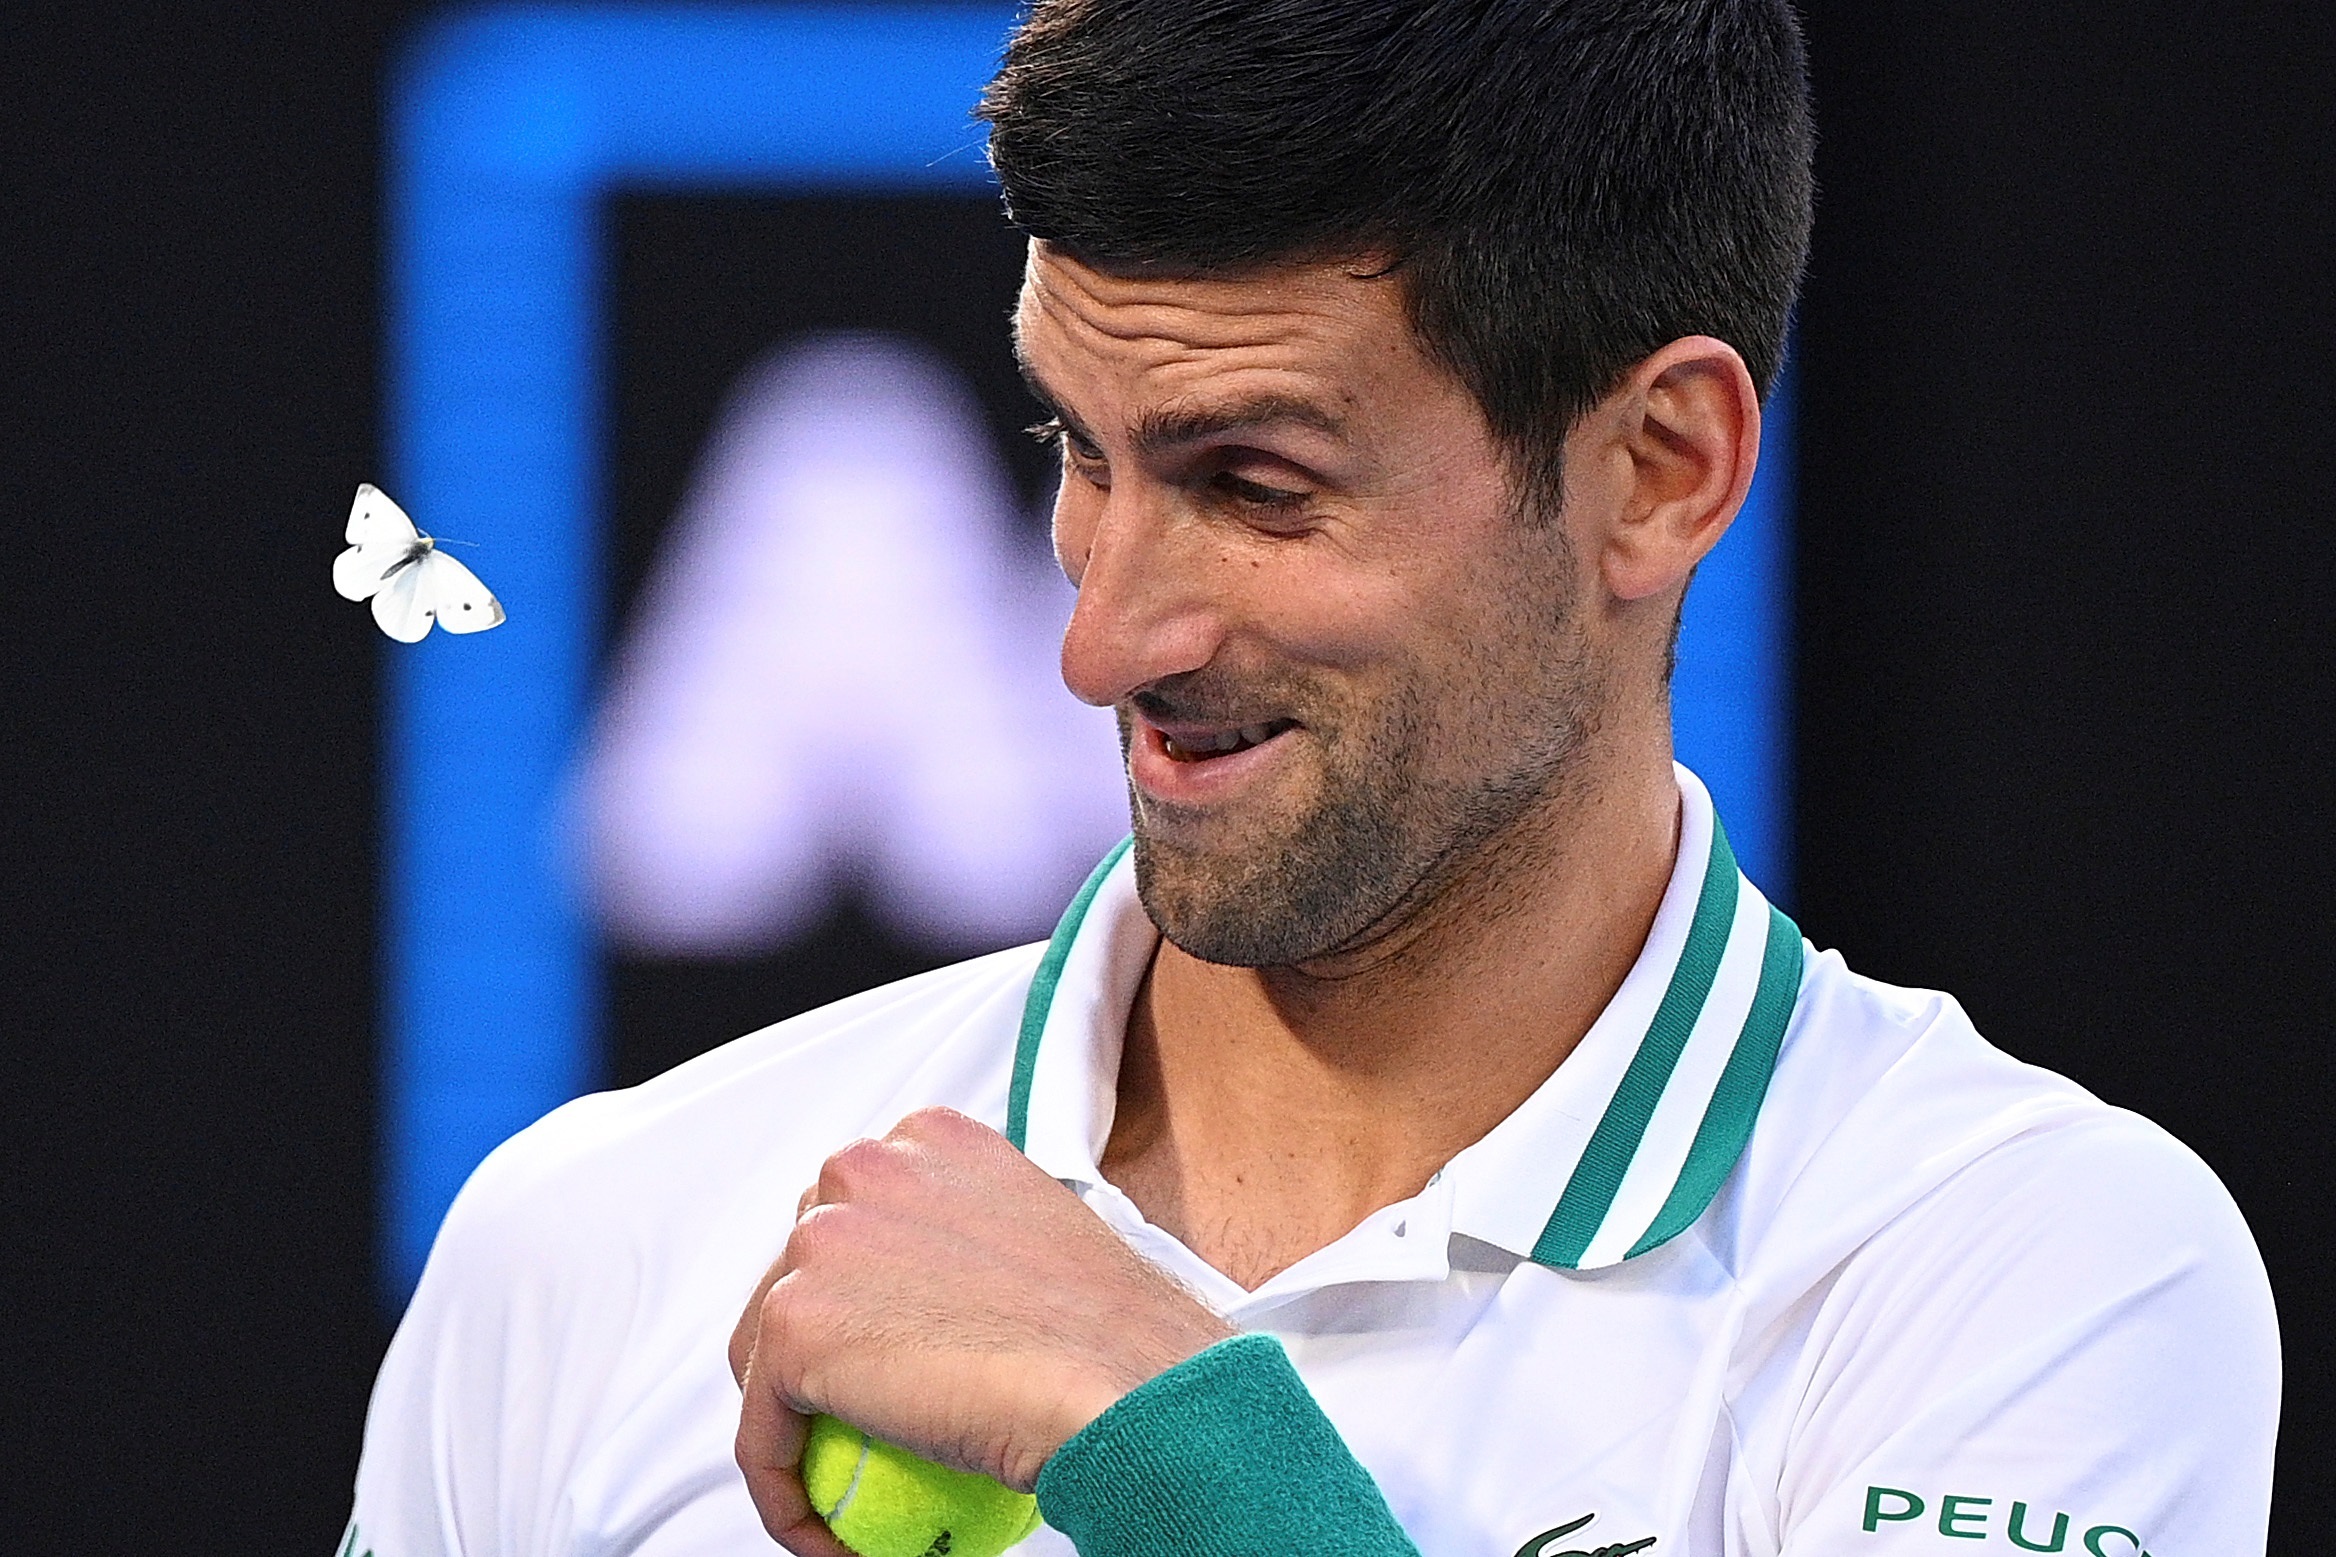 El tenista serbio Novak Djokovic reacciona ante una polilla durante la semifinal del Abierto de Australia ante el ruso Aslan Karatsev celebrada en Melbourne, Australia, el 18 de febrero de 2021. (Foto Prensa Libre: EFE)